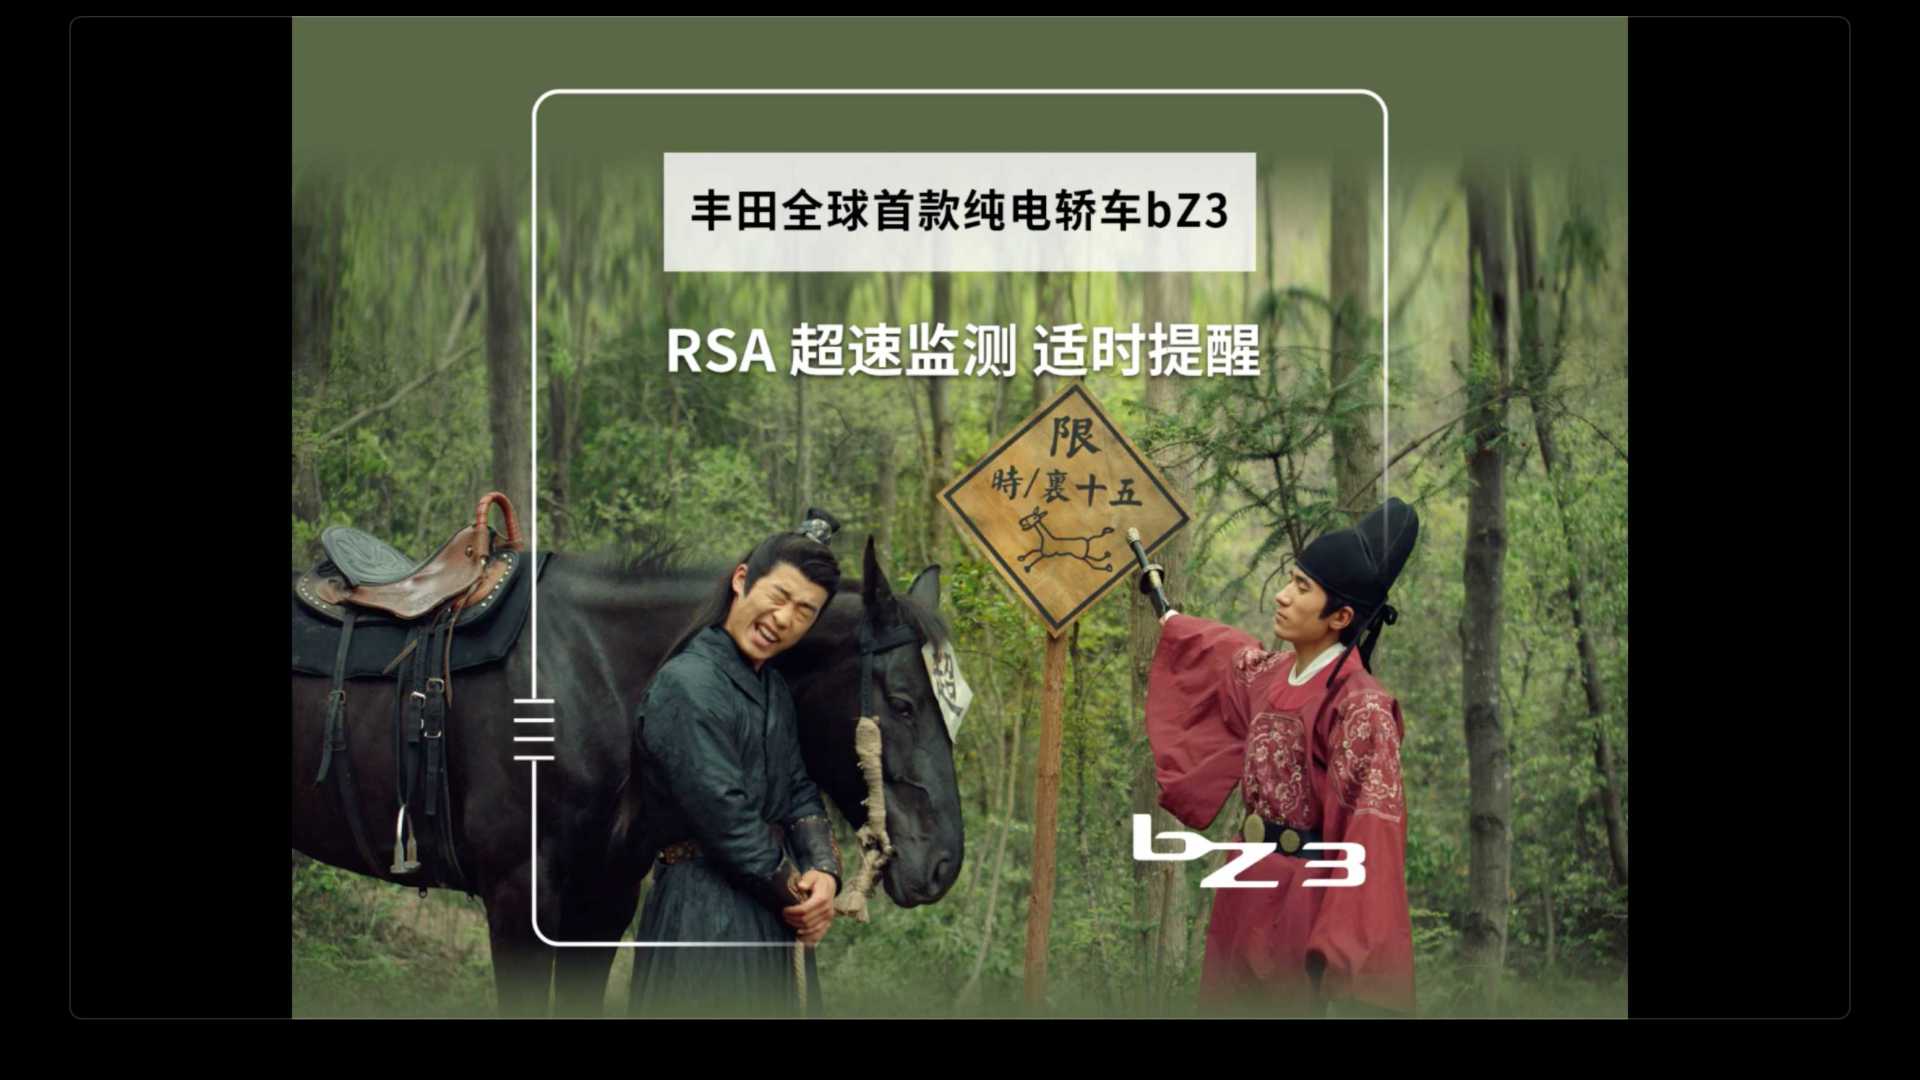 丰田bz3-RSA超速检测适时提醒